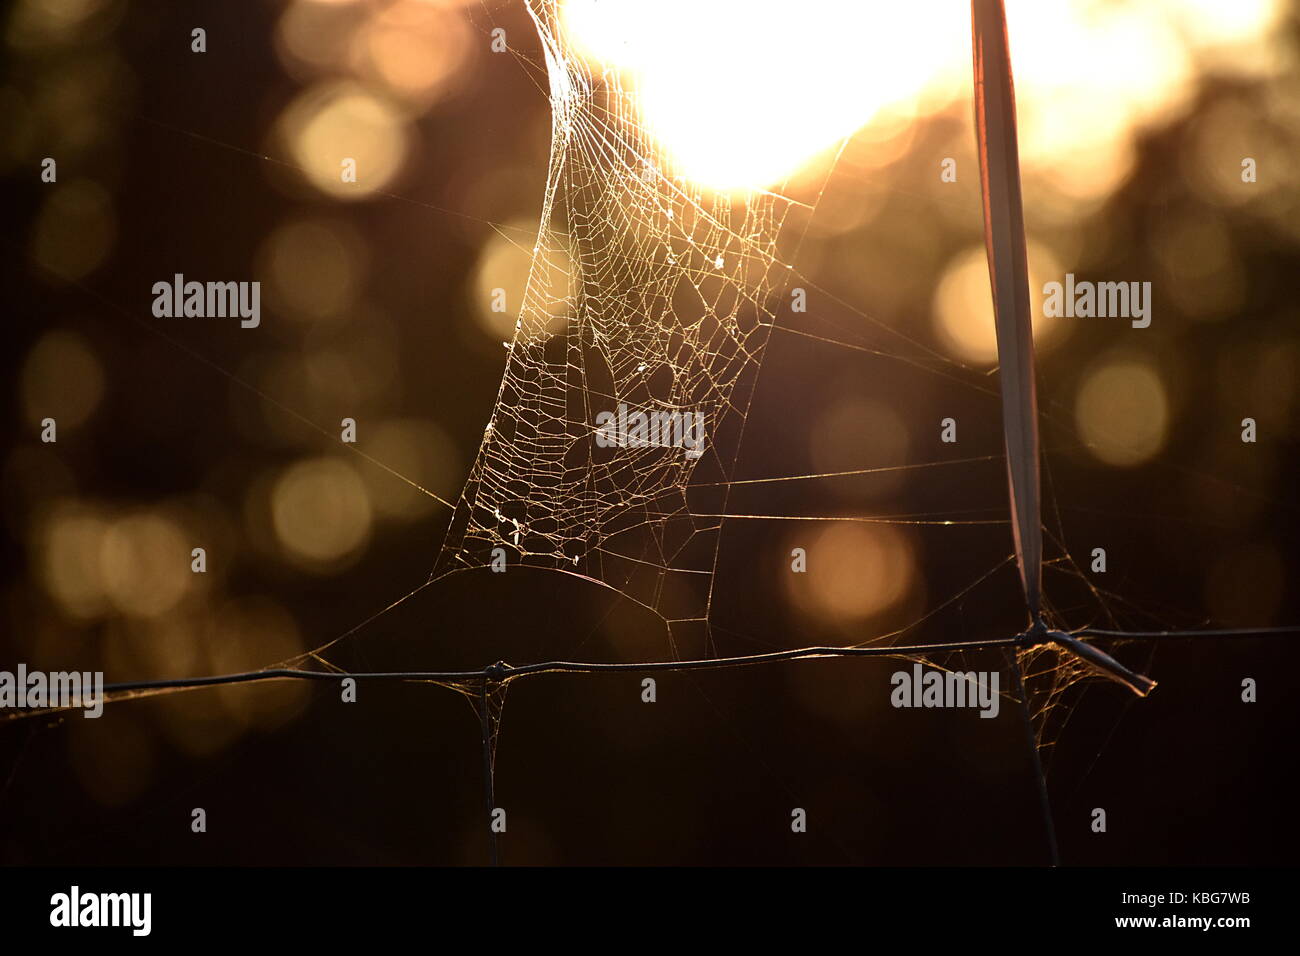 spider's web Stock Photo